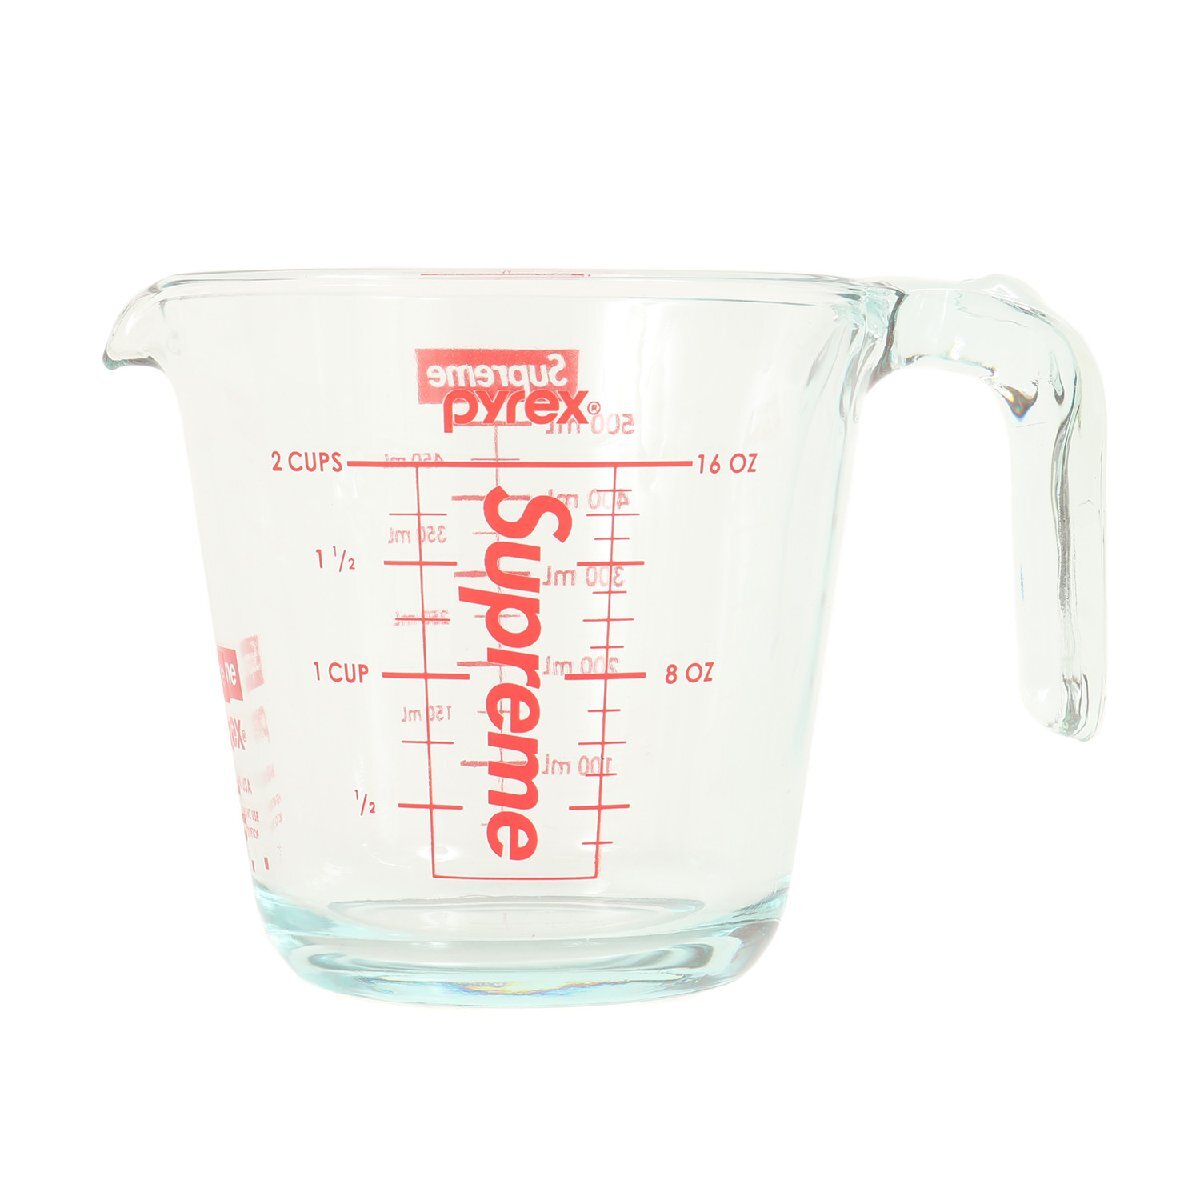 新品 Supreme シュプリーム 19AW Pyrex 計量カップ 2-Cup Measuring Cup クリア ブランド アイテム 雑貨 小物 インテリア